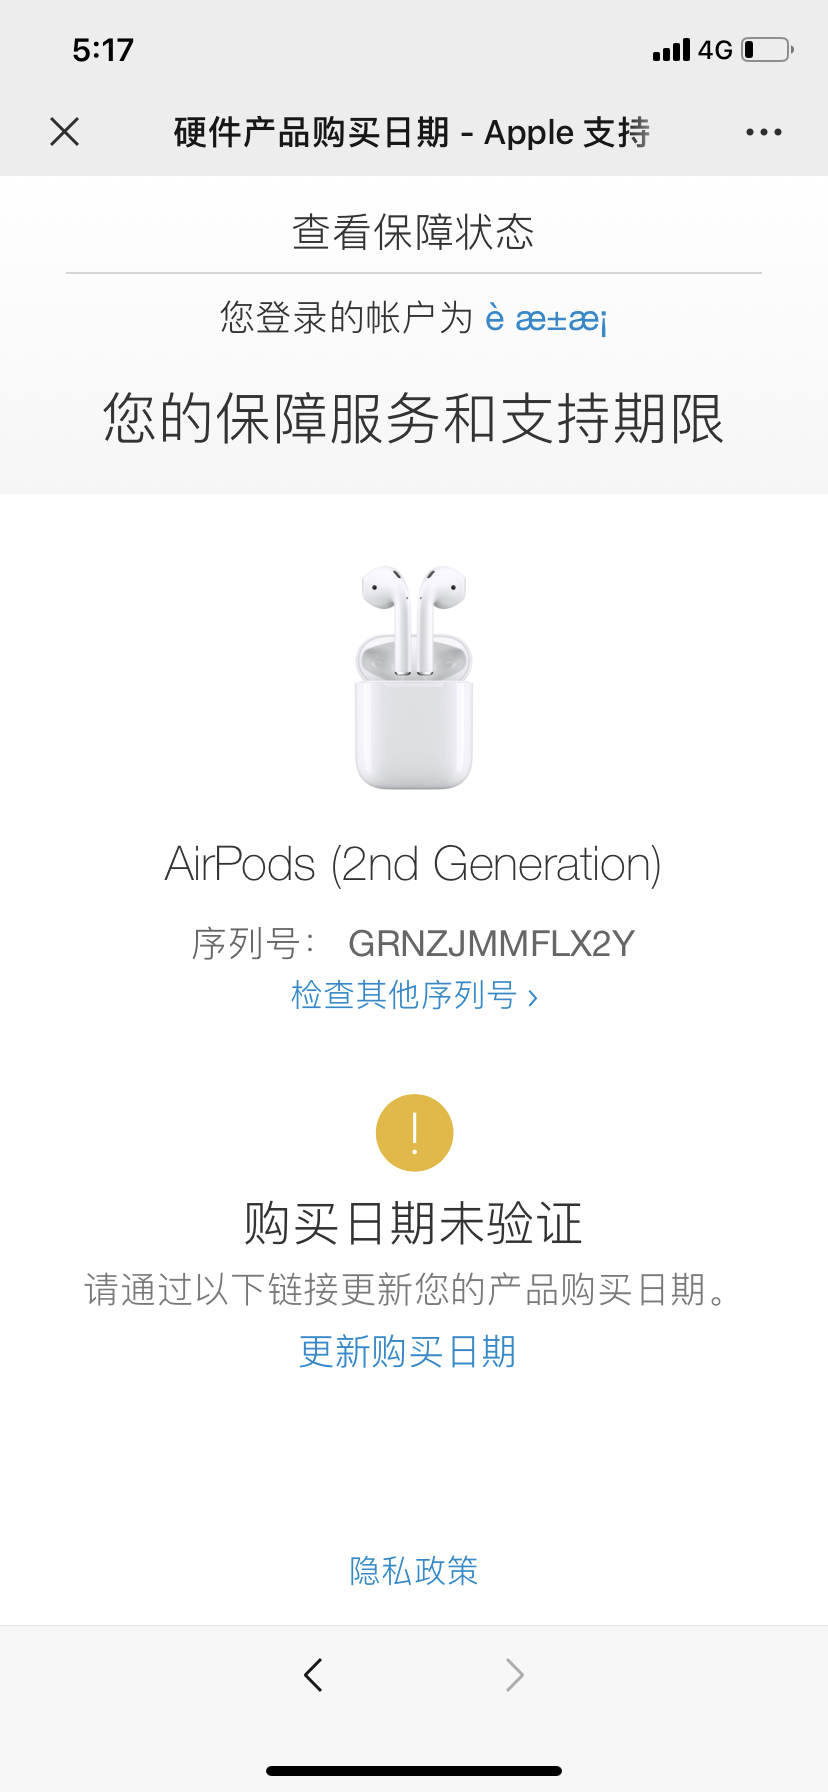 airpods 2在官网验证序列号显示购买日期… - Apple 社区